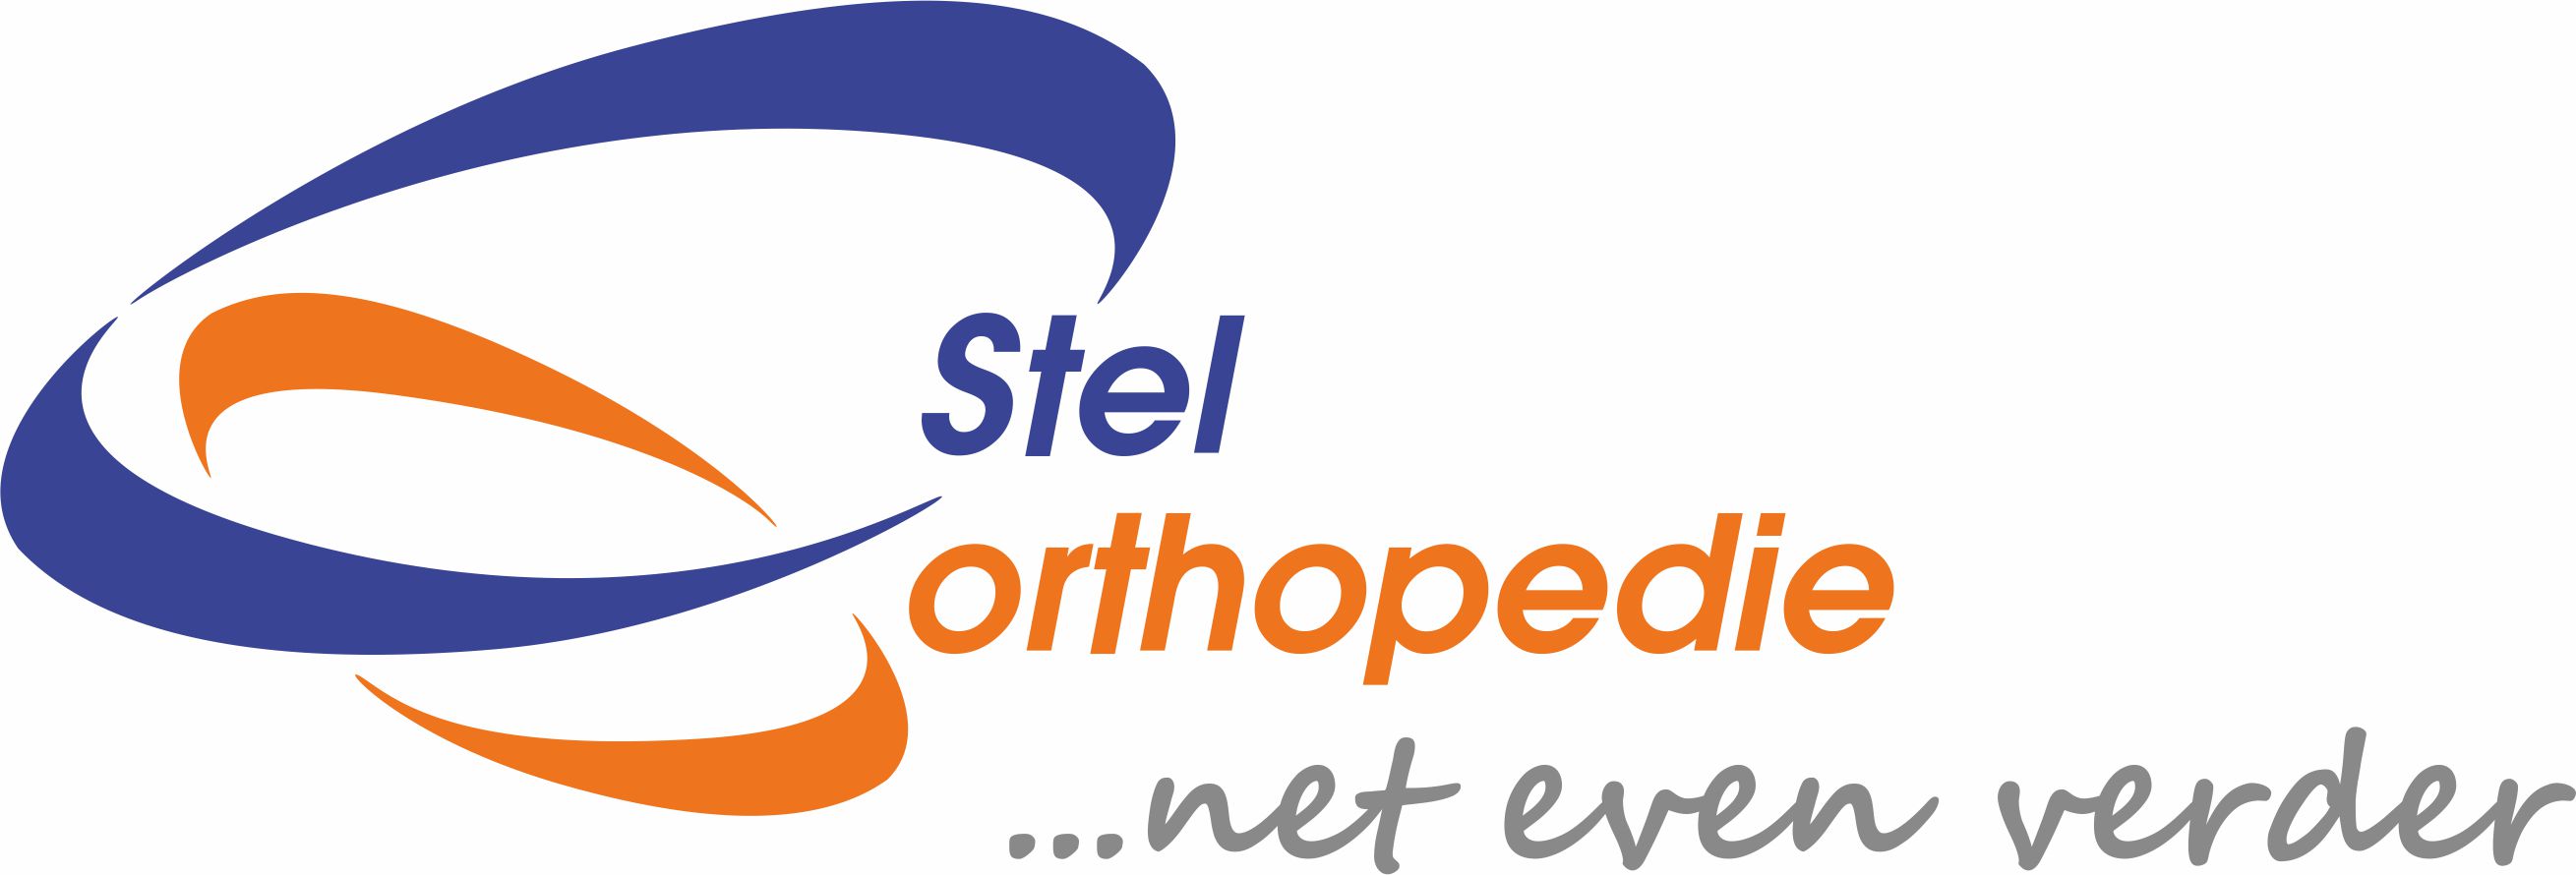 Logo Stel Orthopedie verder